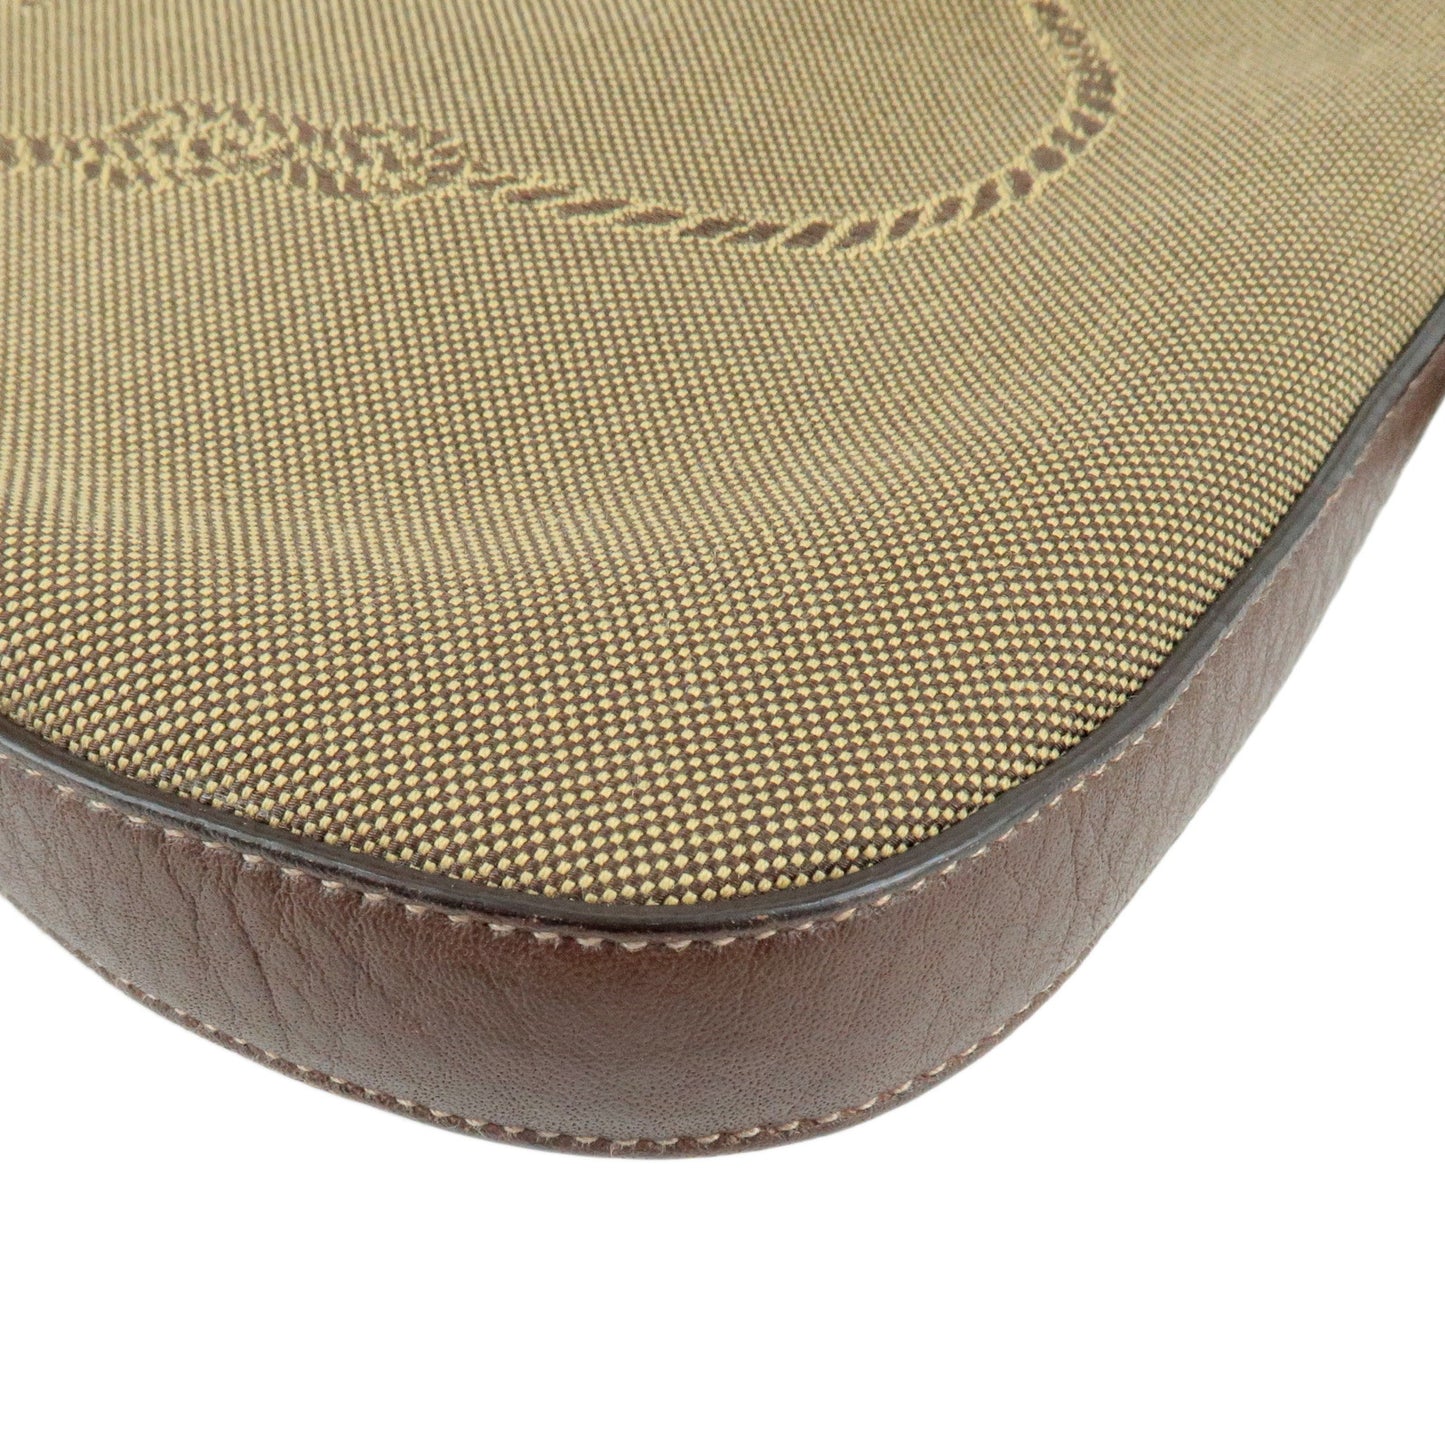 PRADA Nylon Jaquard Leather Shoulder Bag Beige Brown BT0706